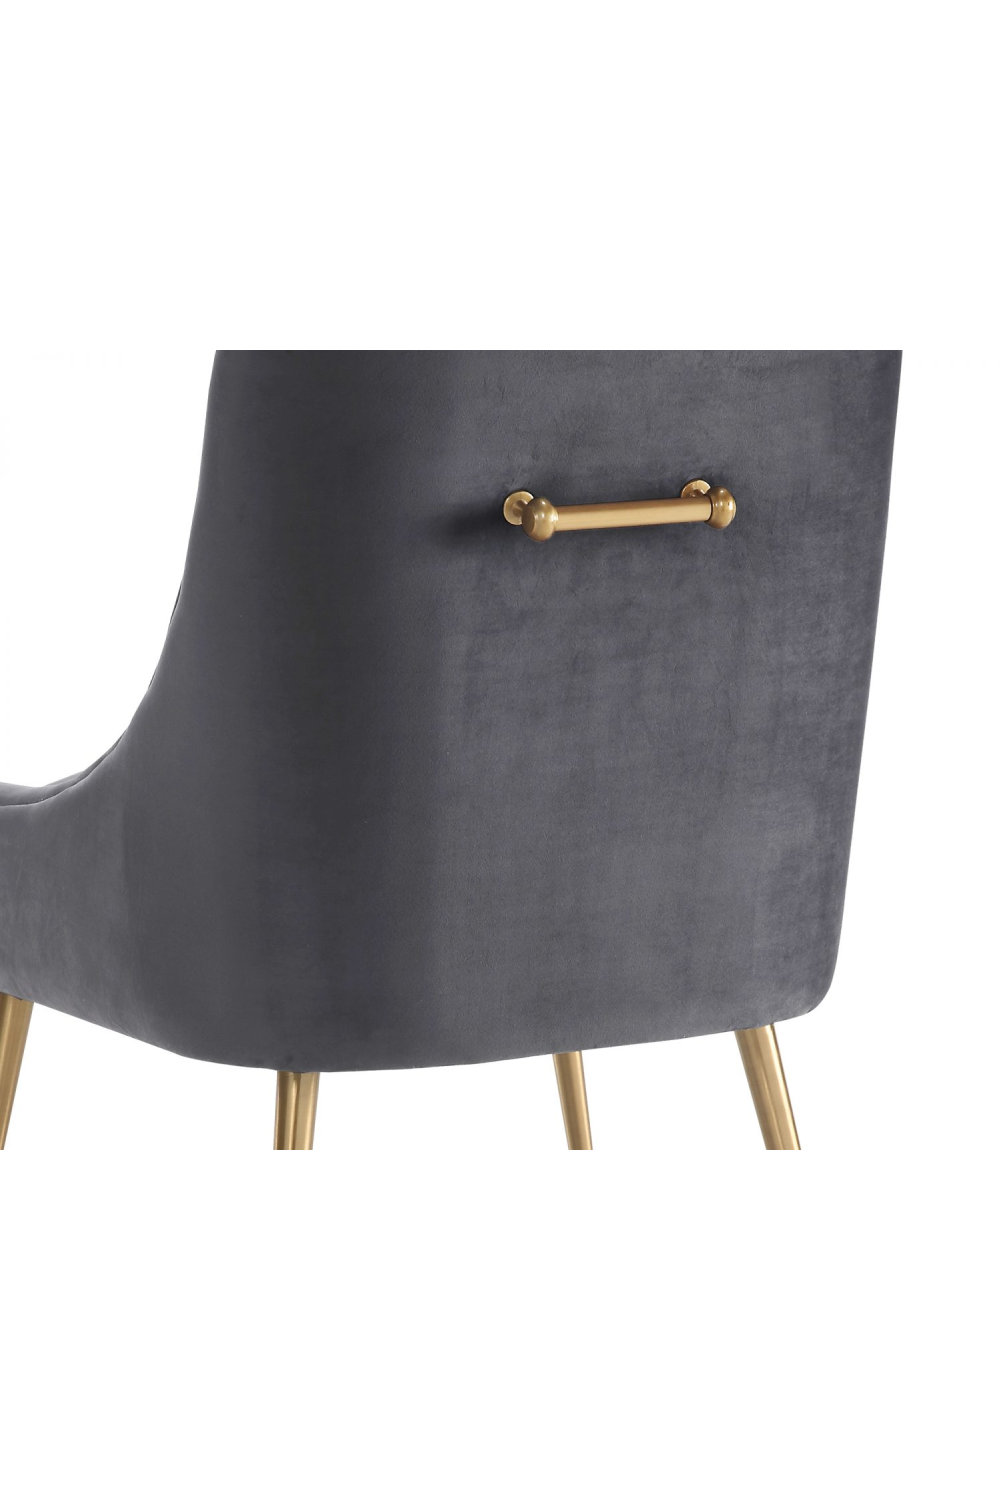 Gray Velvet Dining Chair | Liang & Eimil Cohen | OROA